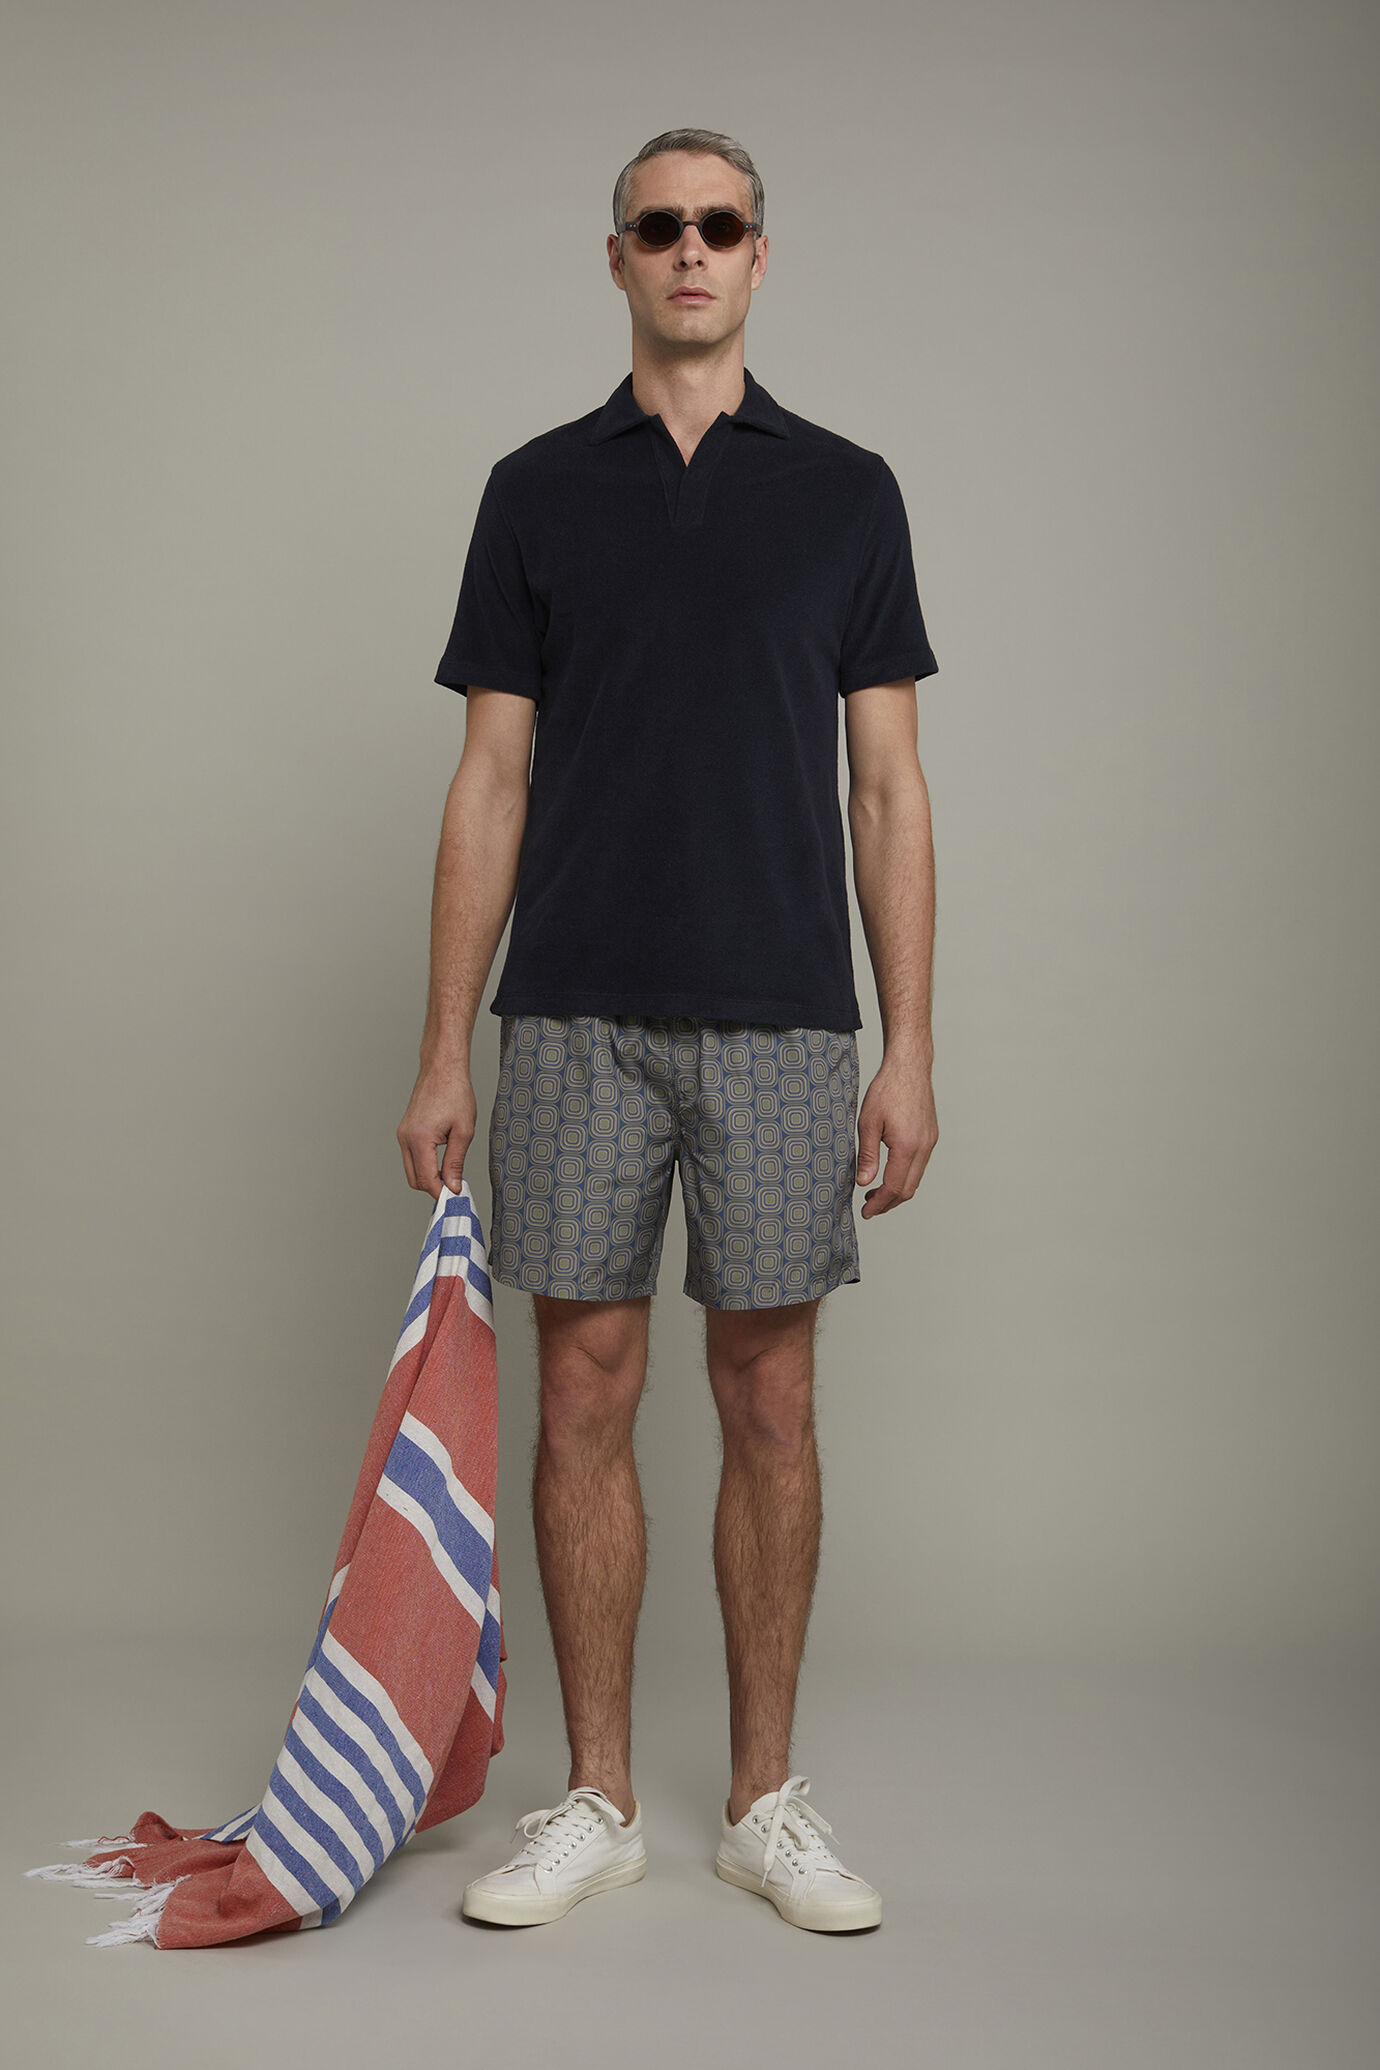 Men's swimwear macro patterned